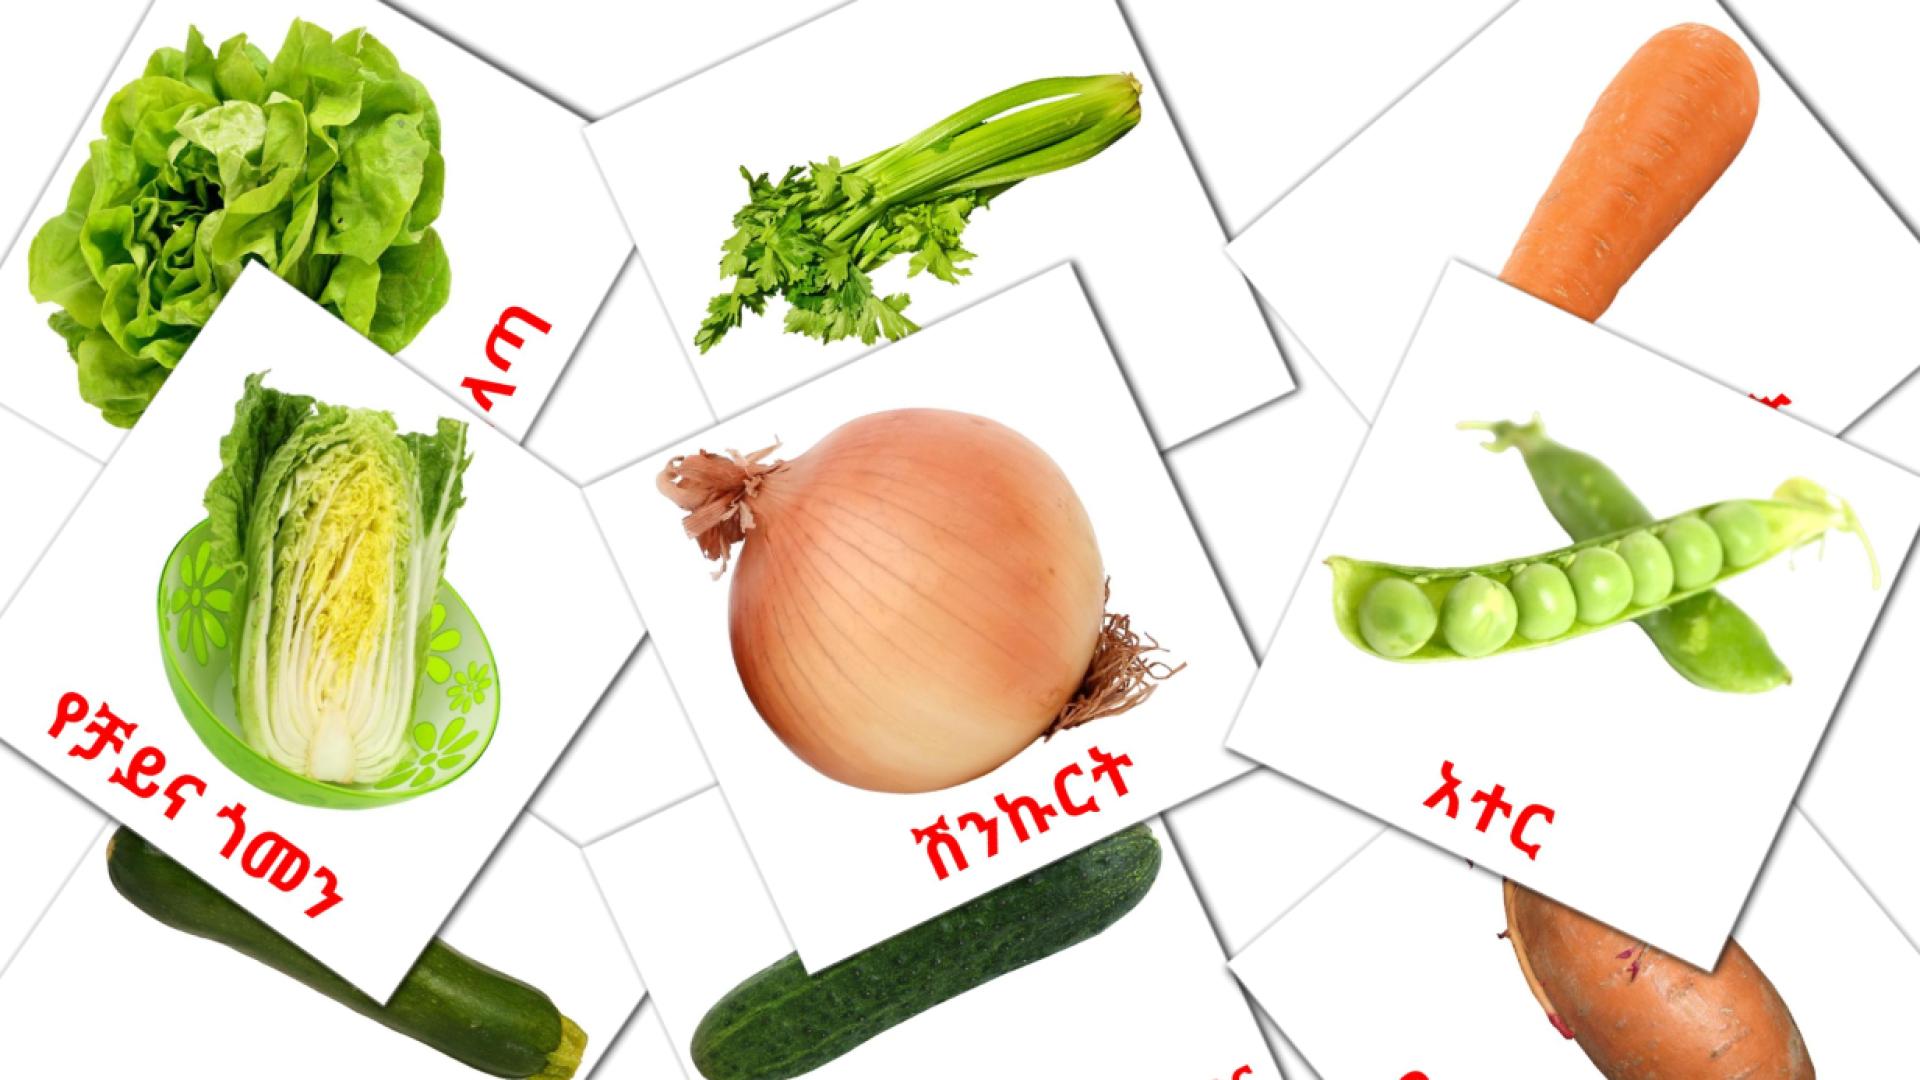 Groenten - ahmarice woordenschatkaarten